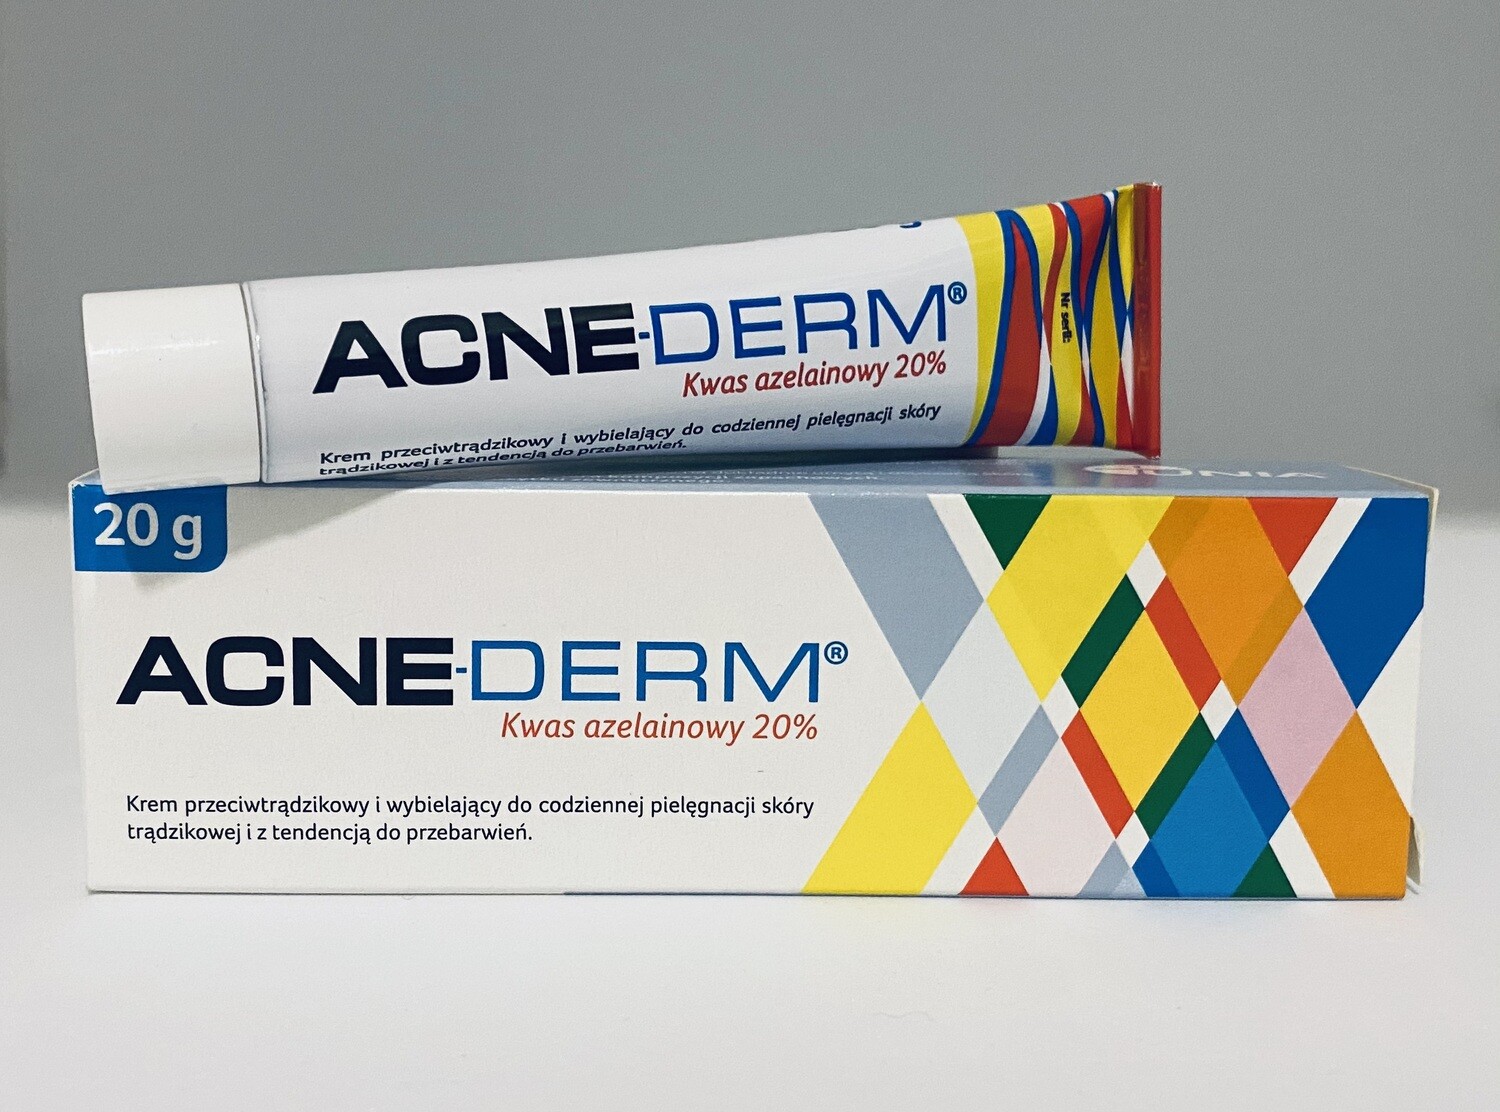 ACNE-DERM CREMA 20g Acido Azelaico 20%